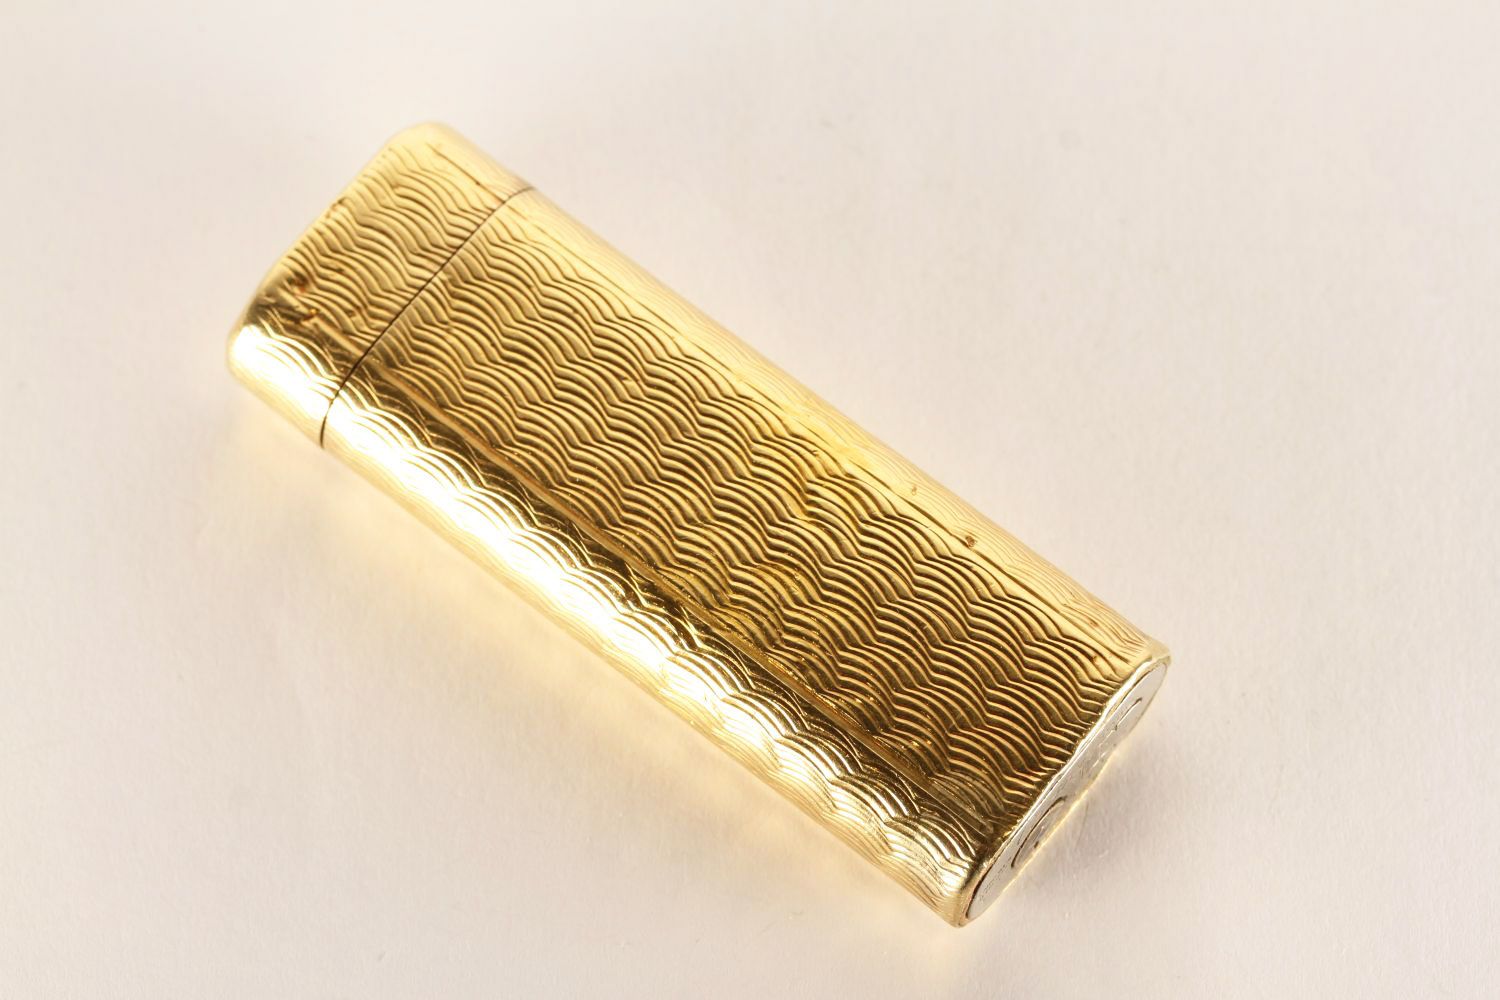 Cartier Lighter, gold patterned design, approximate length 7cm